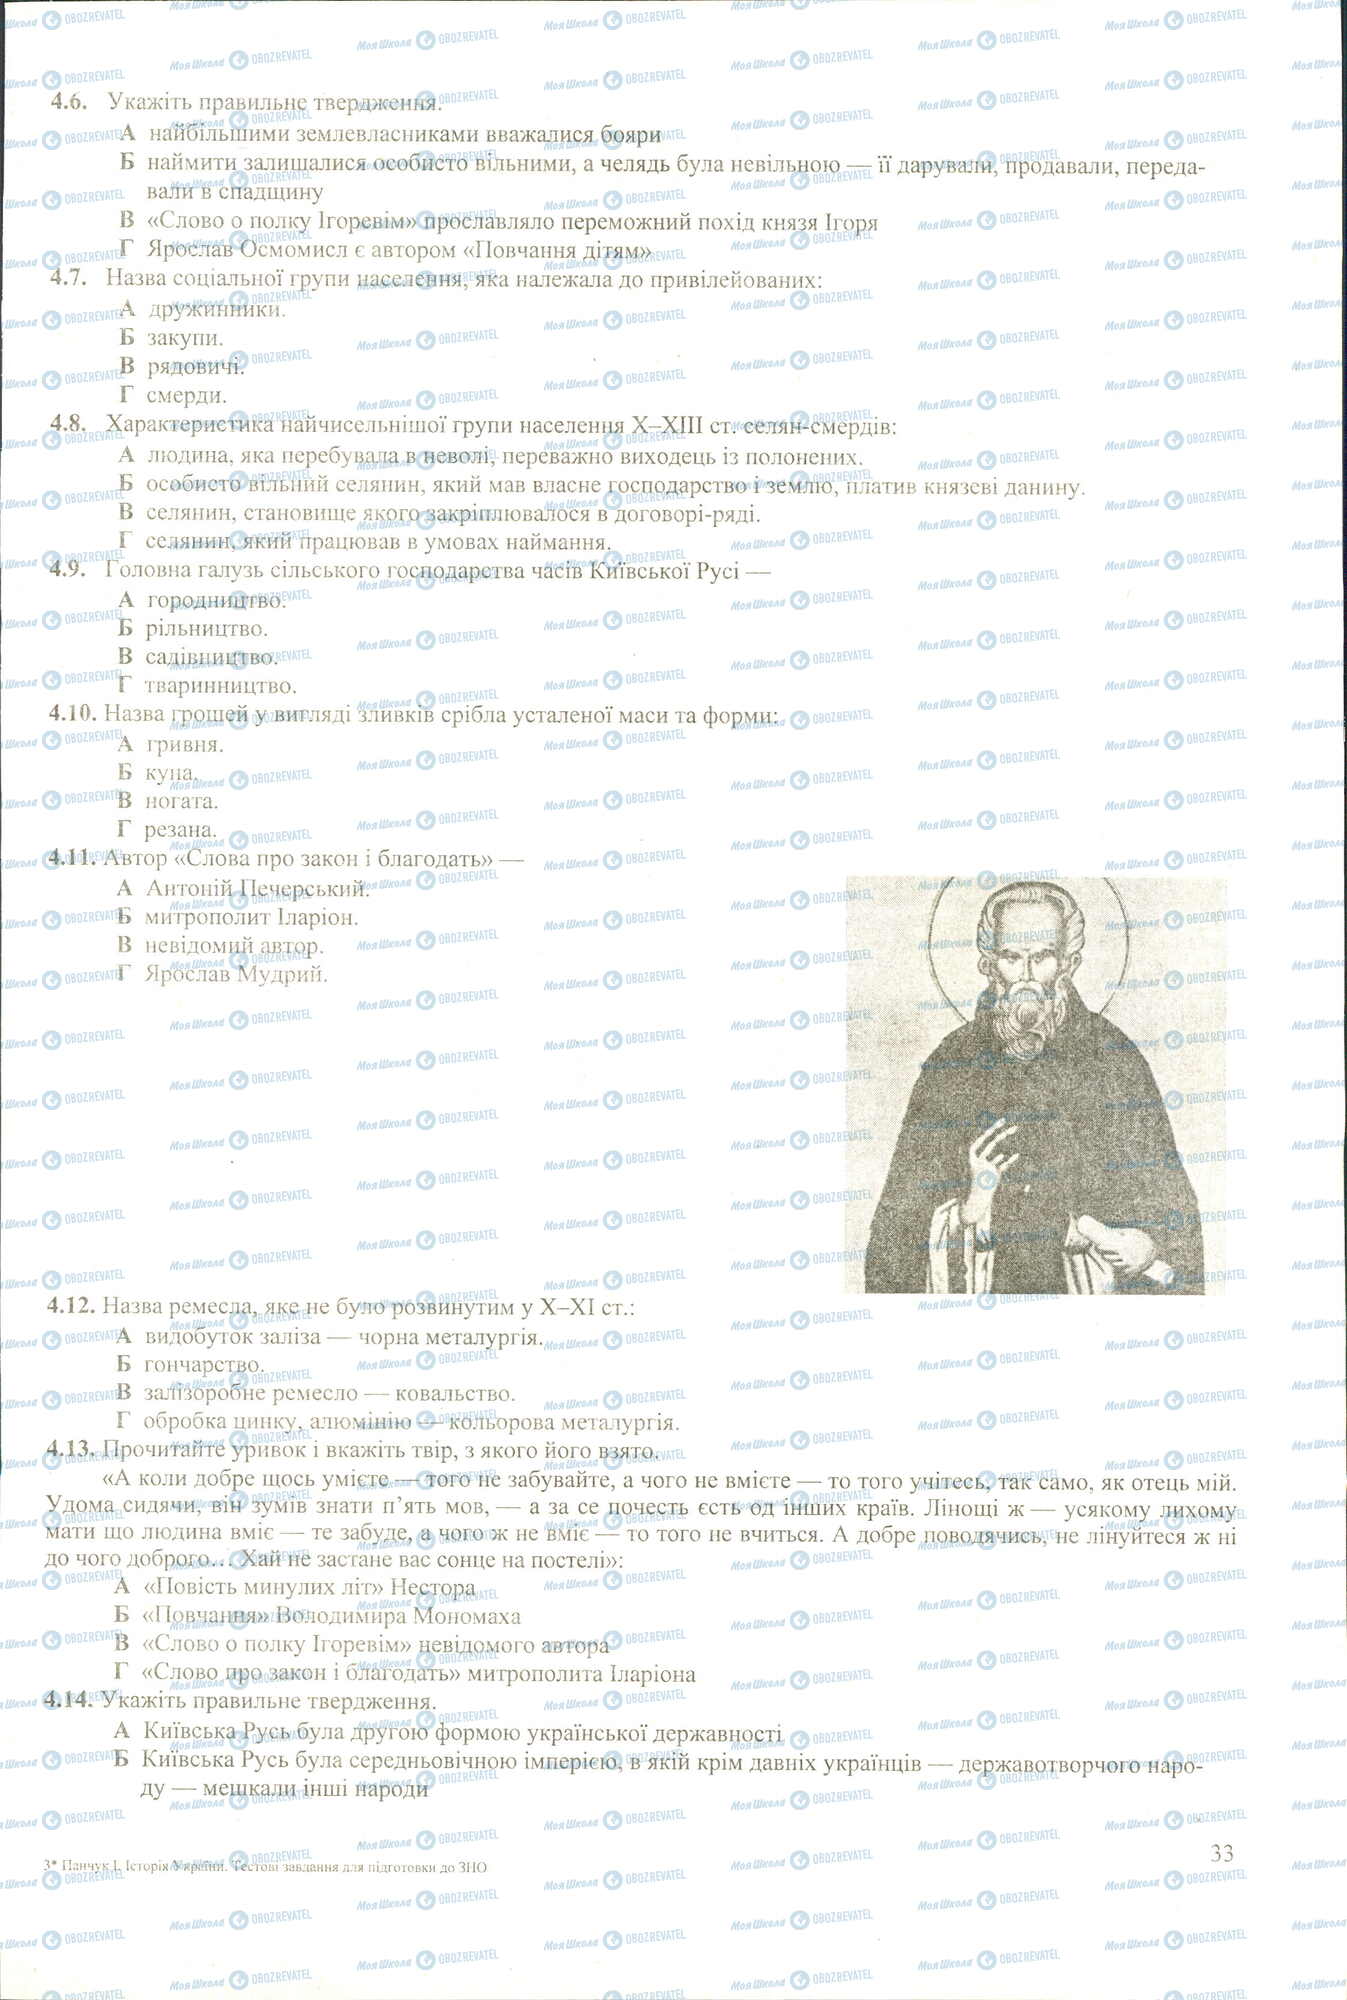 ЗНО История Украины 11 класс страница 4.6-4.14